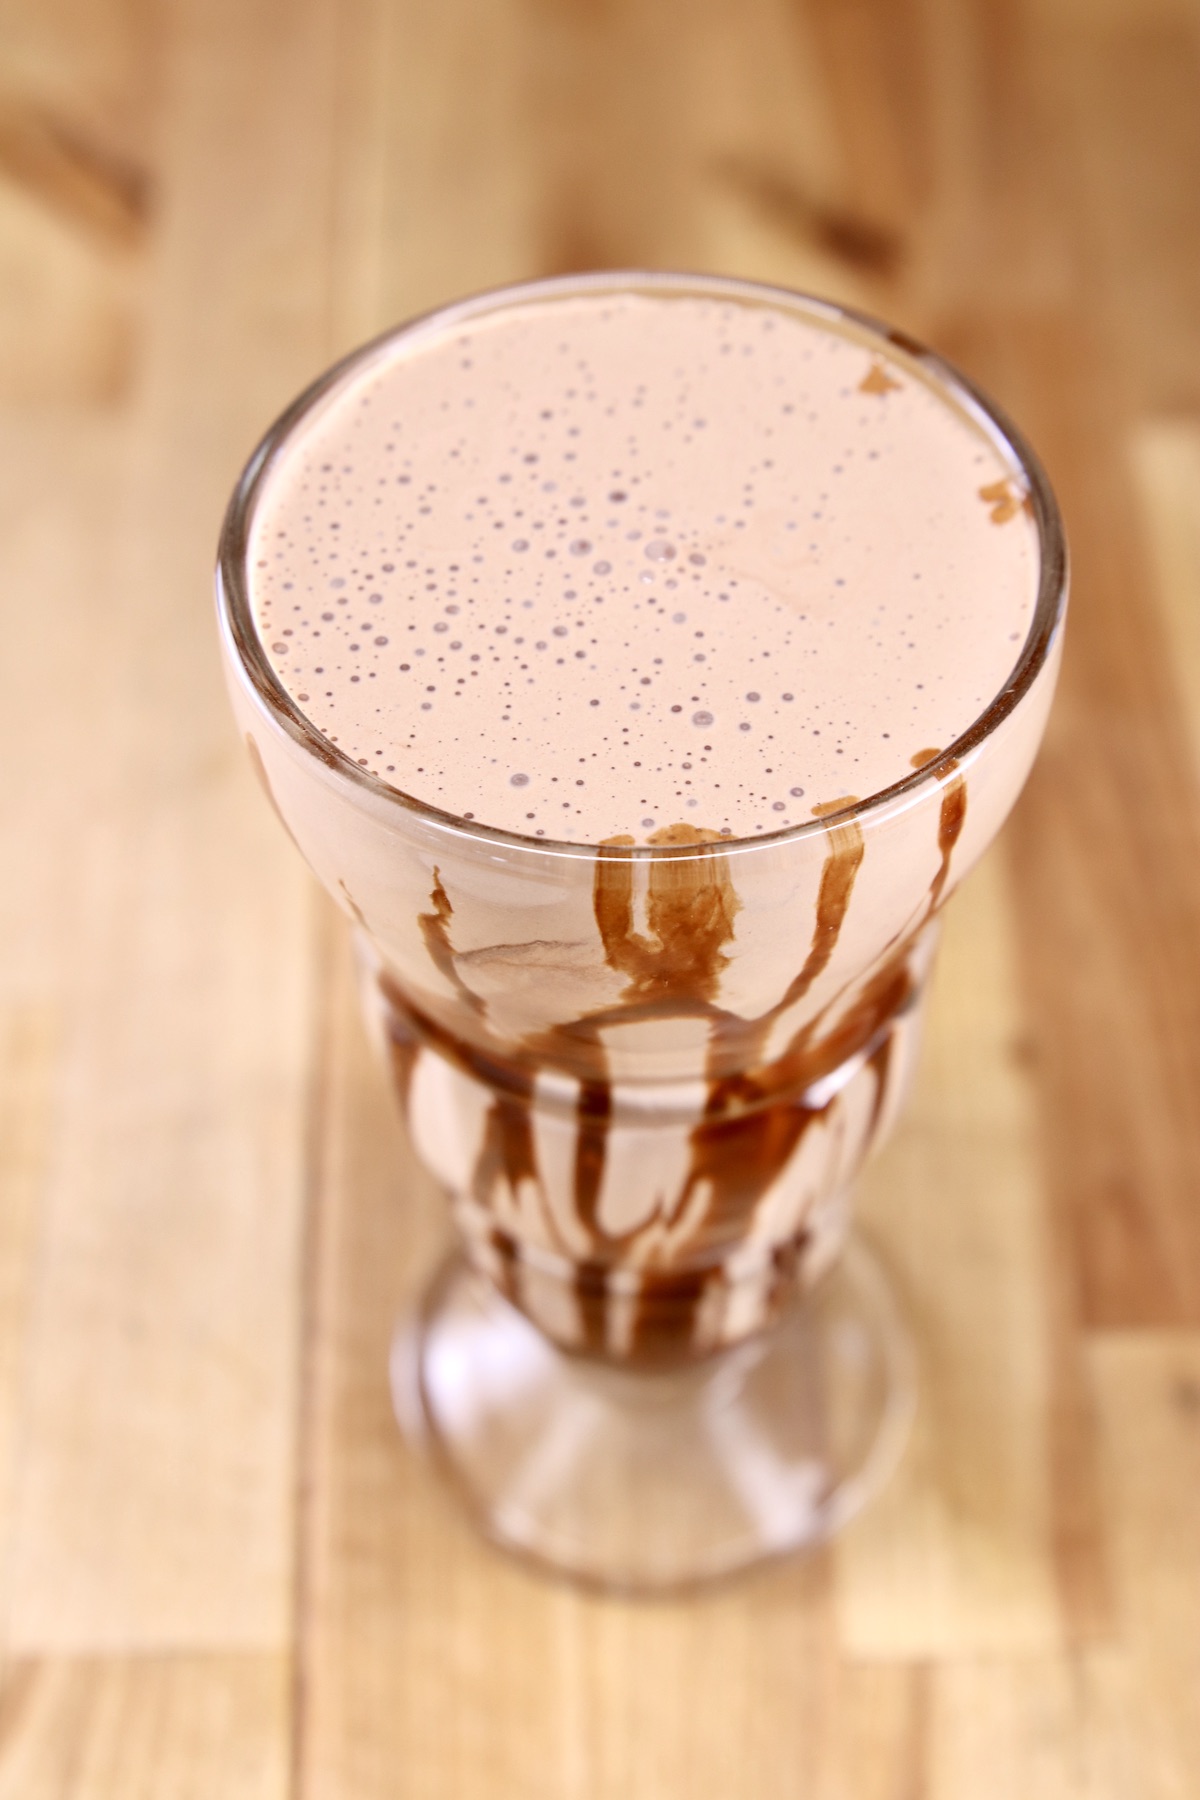 Chocolate Irish Cream Milkshake in a tall glass